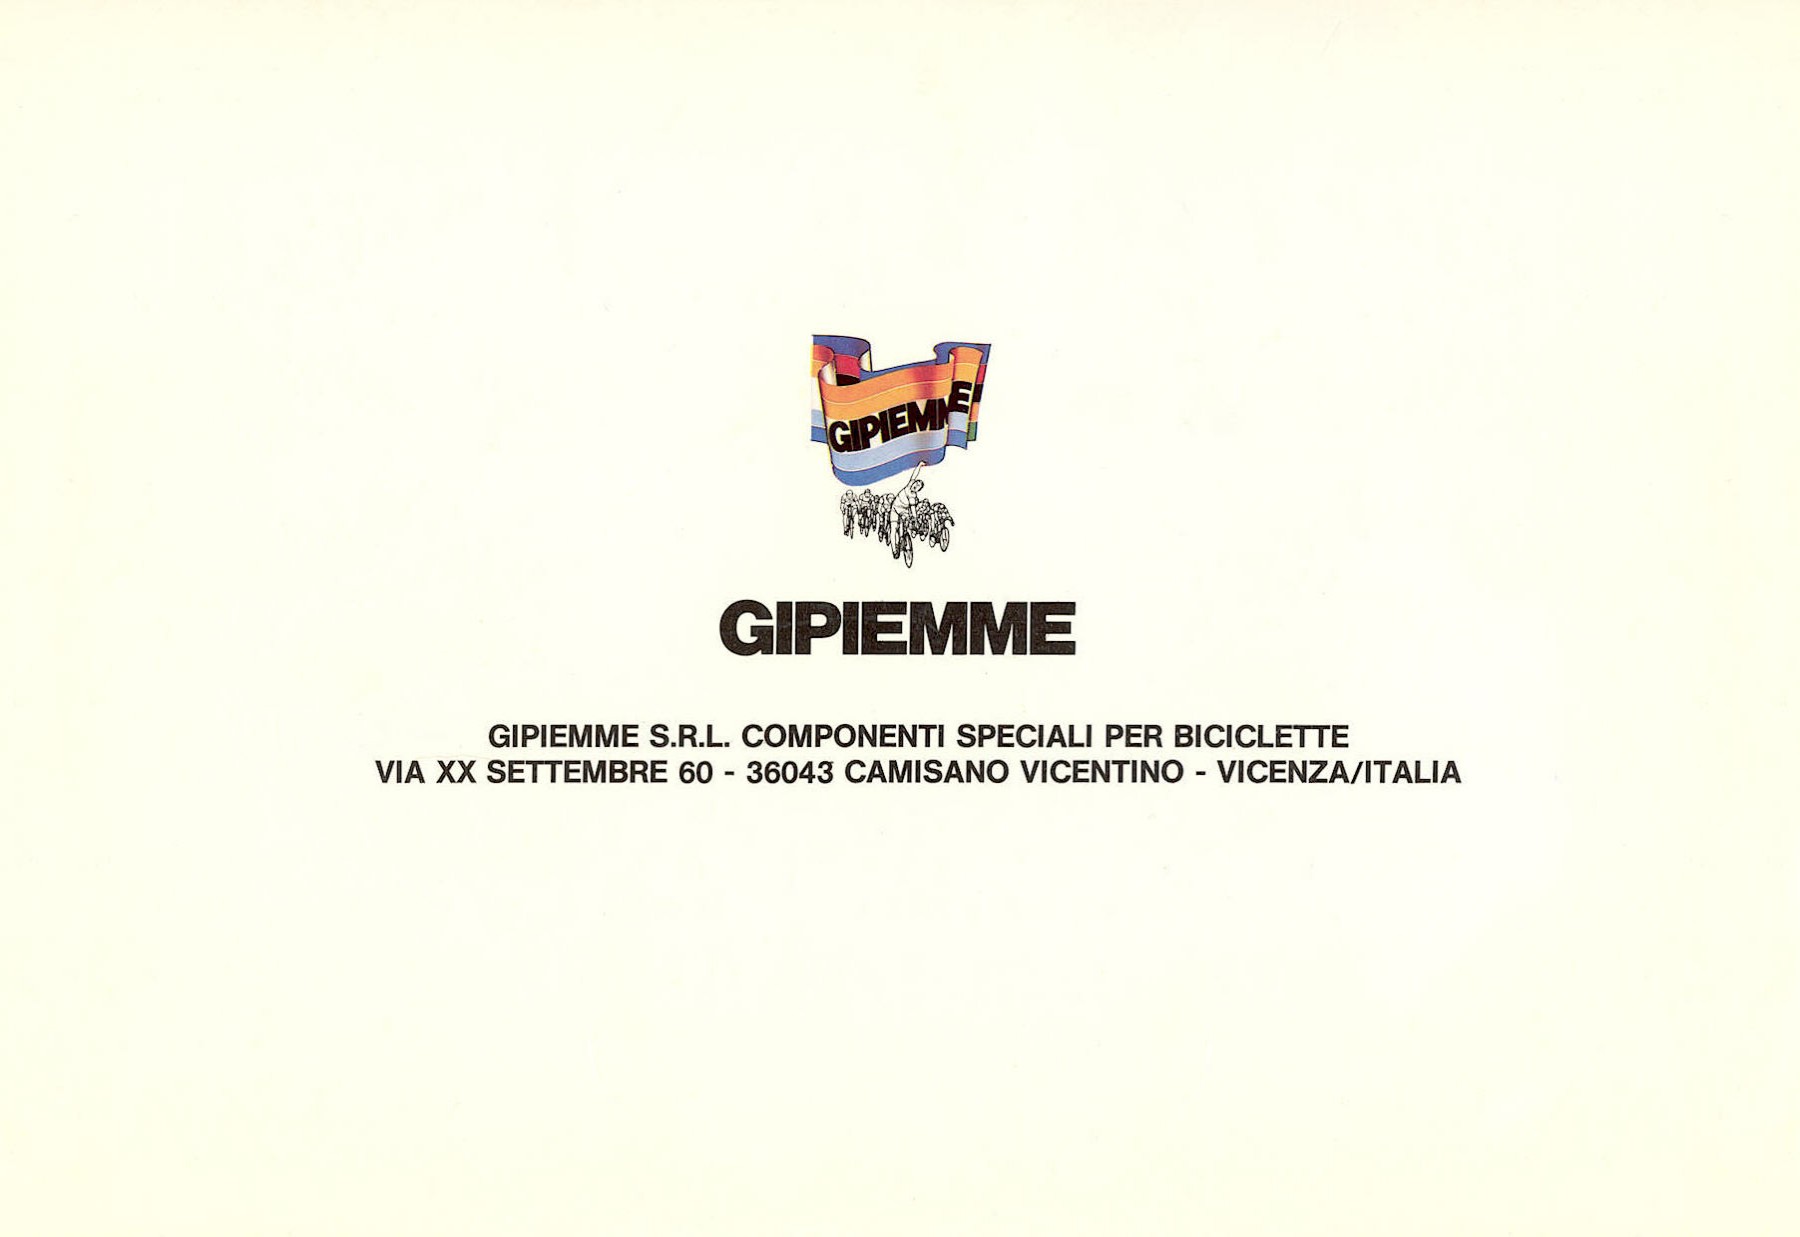 Gipiemme catalog - (10-1984)